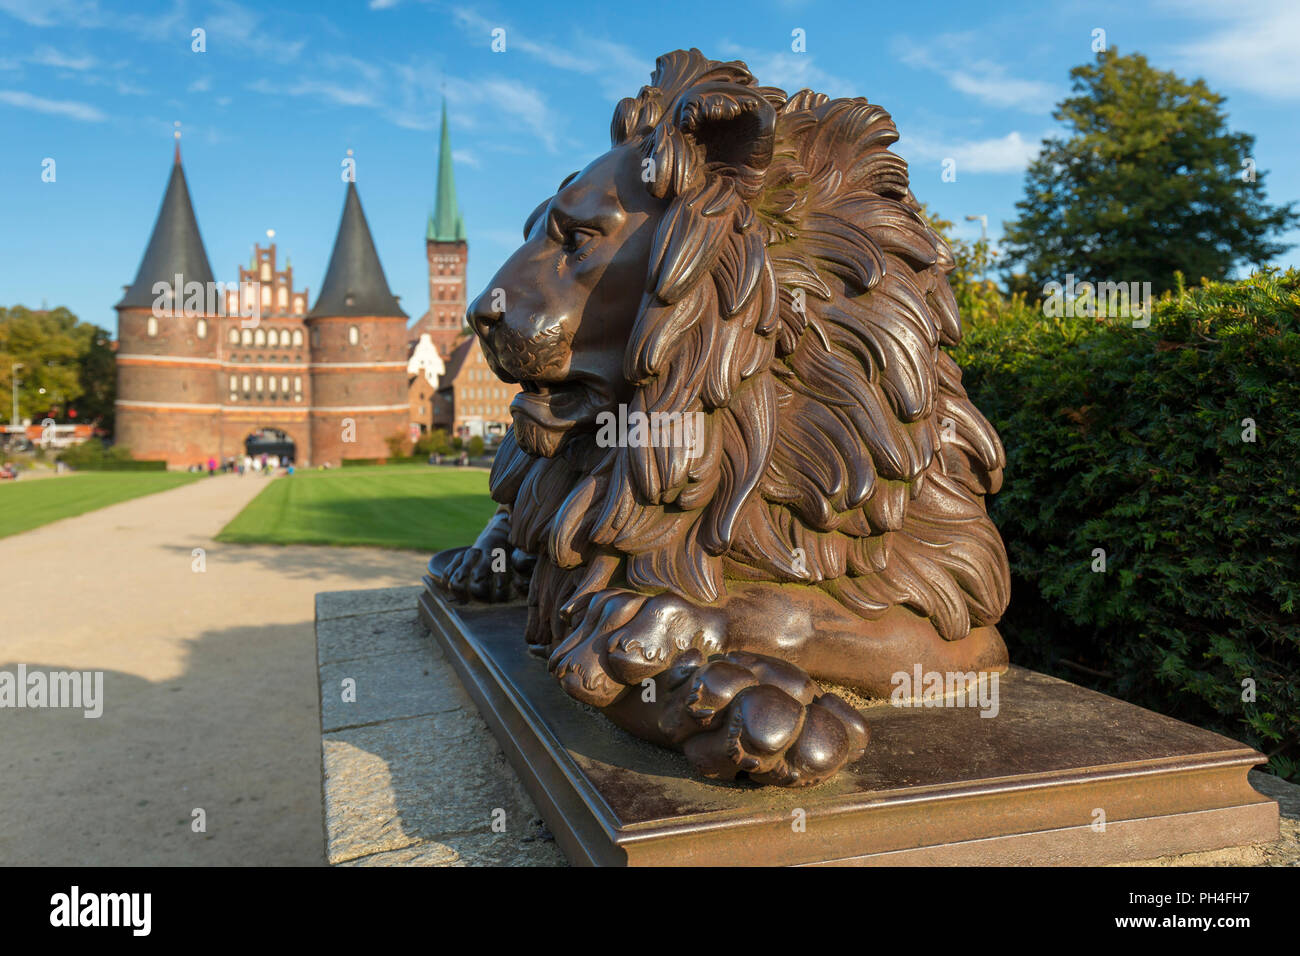 Lion de bronze statue en face de la Porte de Holstein (Holstentor) à Lubeck, Schleswig-Holstein, Allemagne Banque D'Images